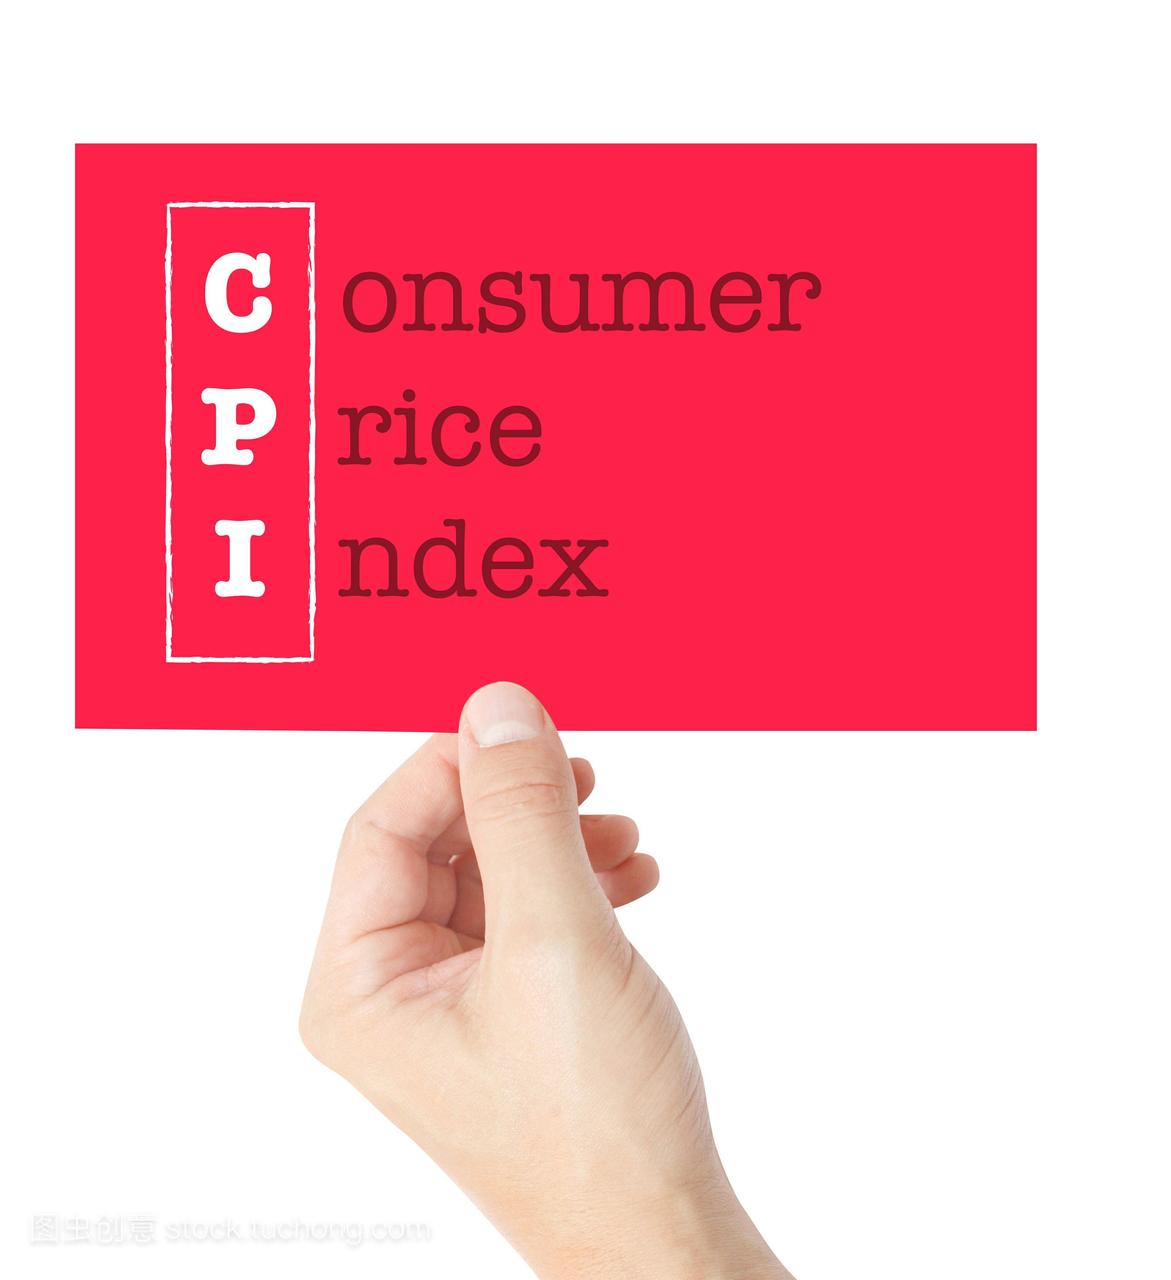 消费者价格指数在一张牌上解释